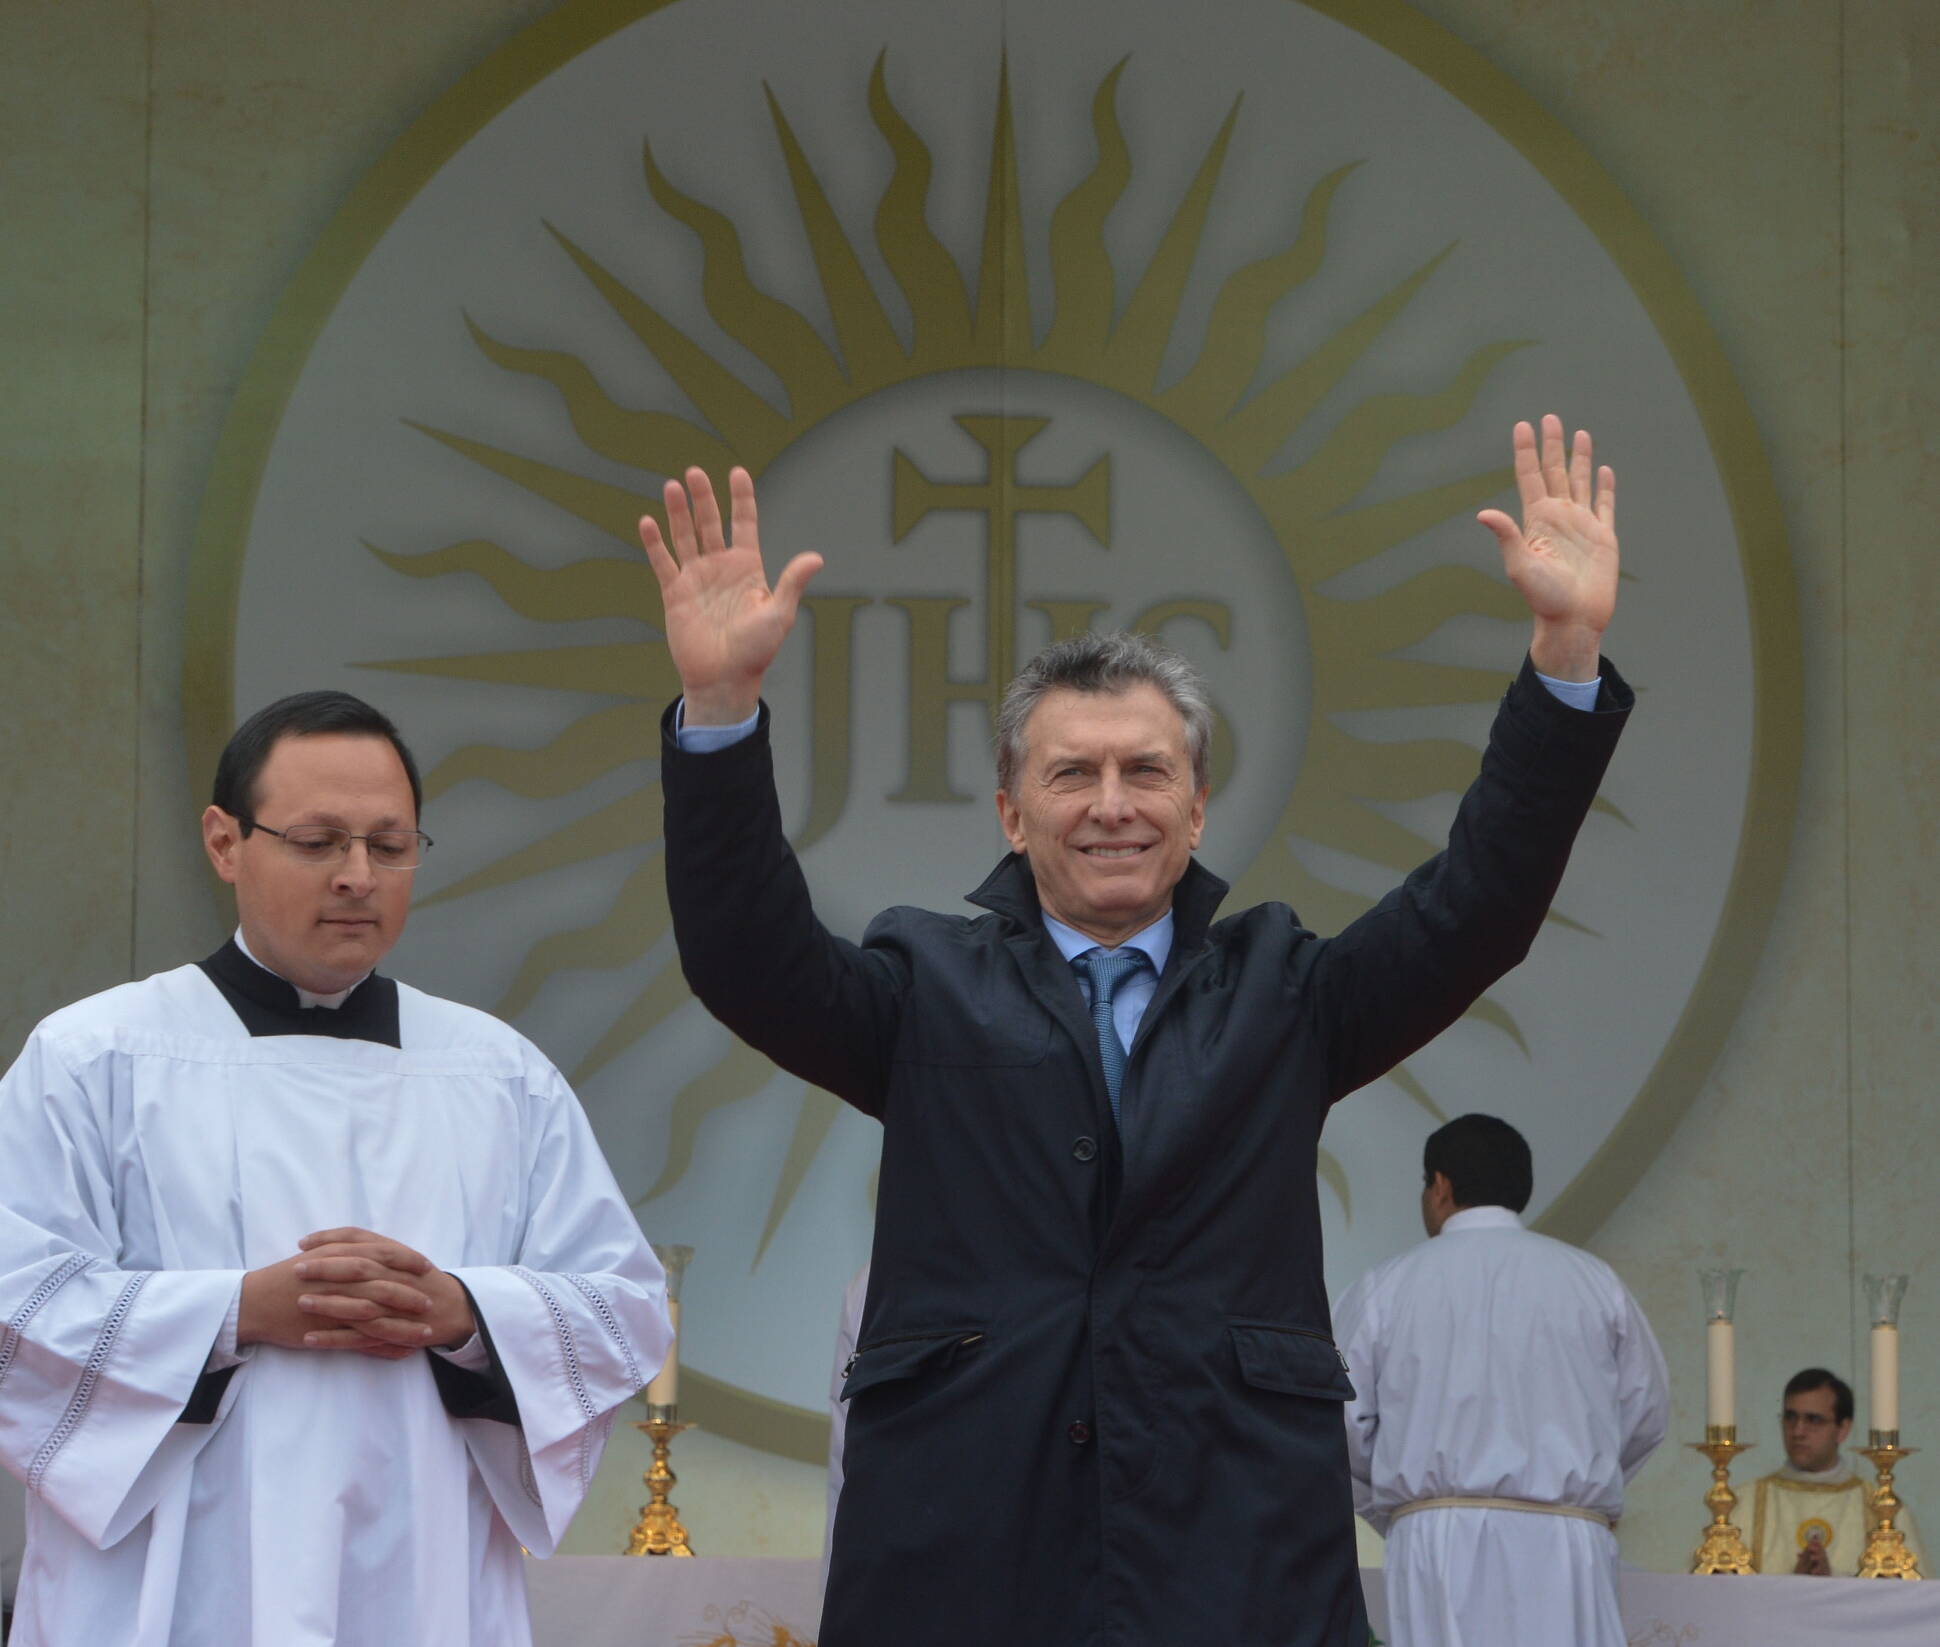 El presidente Macri abogó en favor de vencer todas las formas de pobreza 